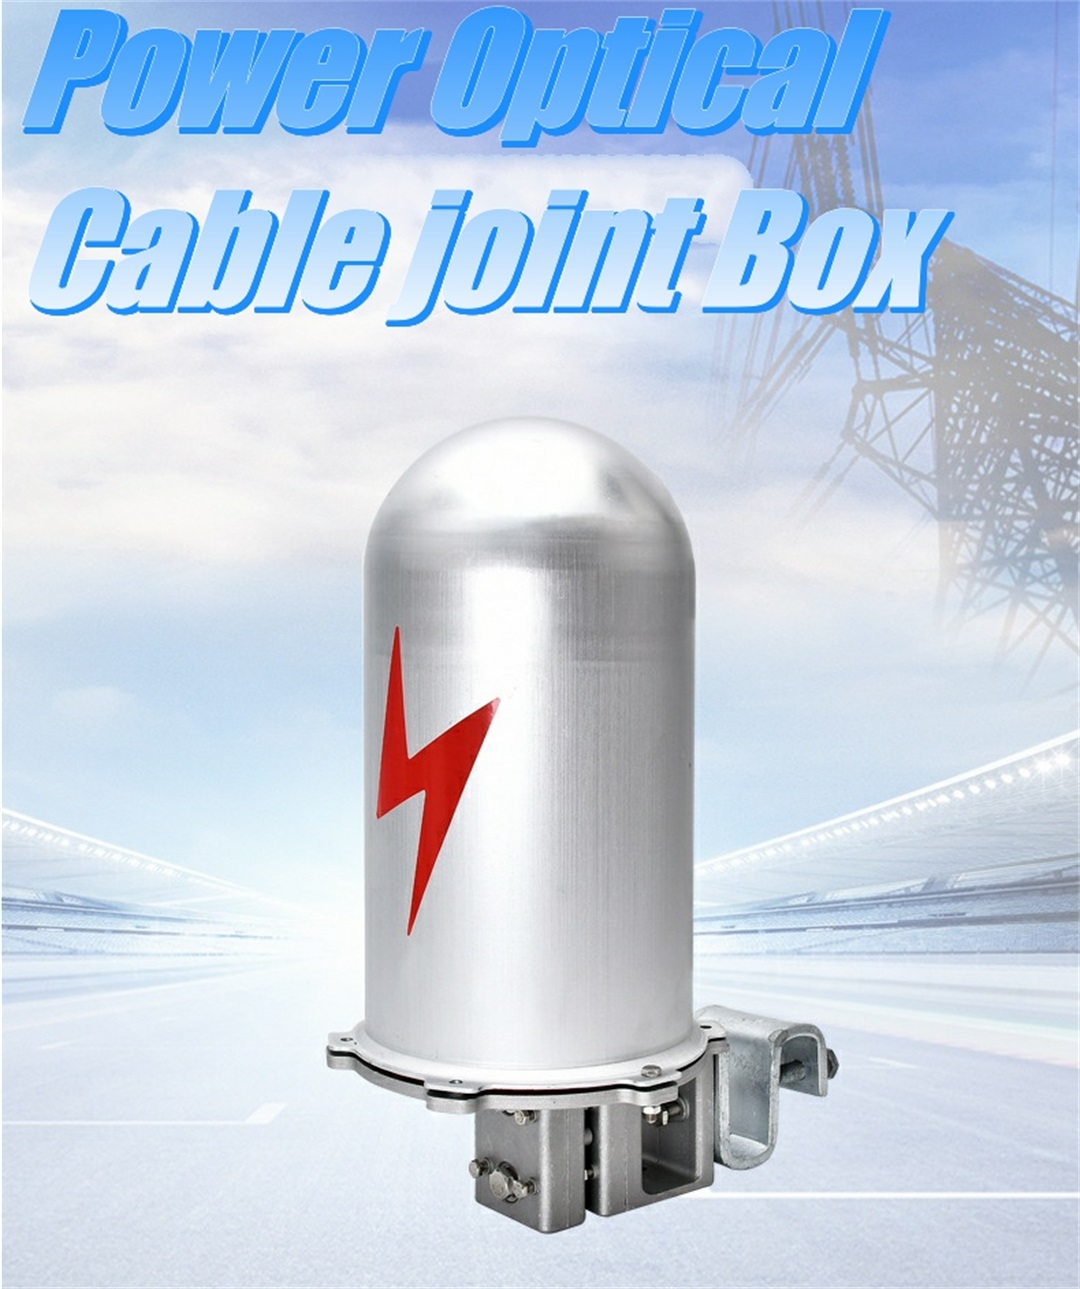 Power optyske kabel joint box, Optyske fiber terminal ferbining junction box